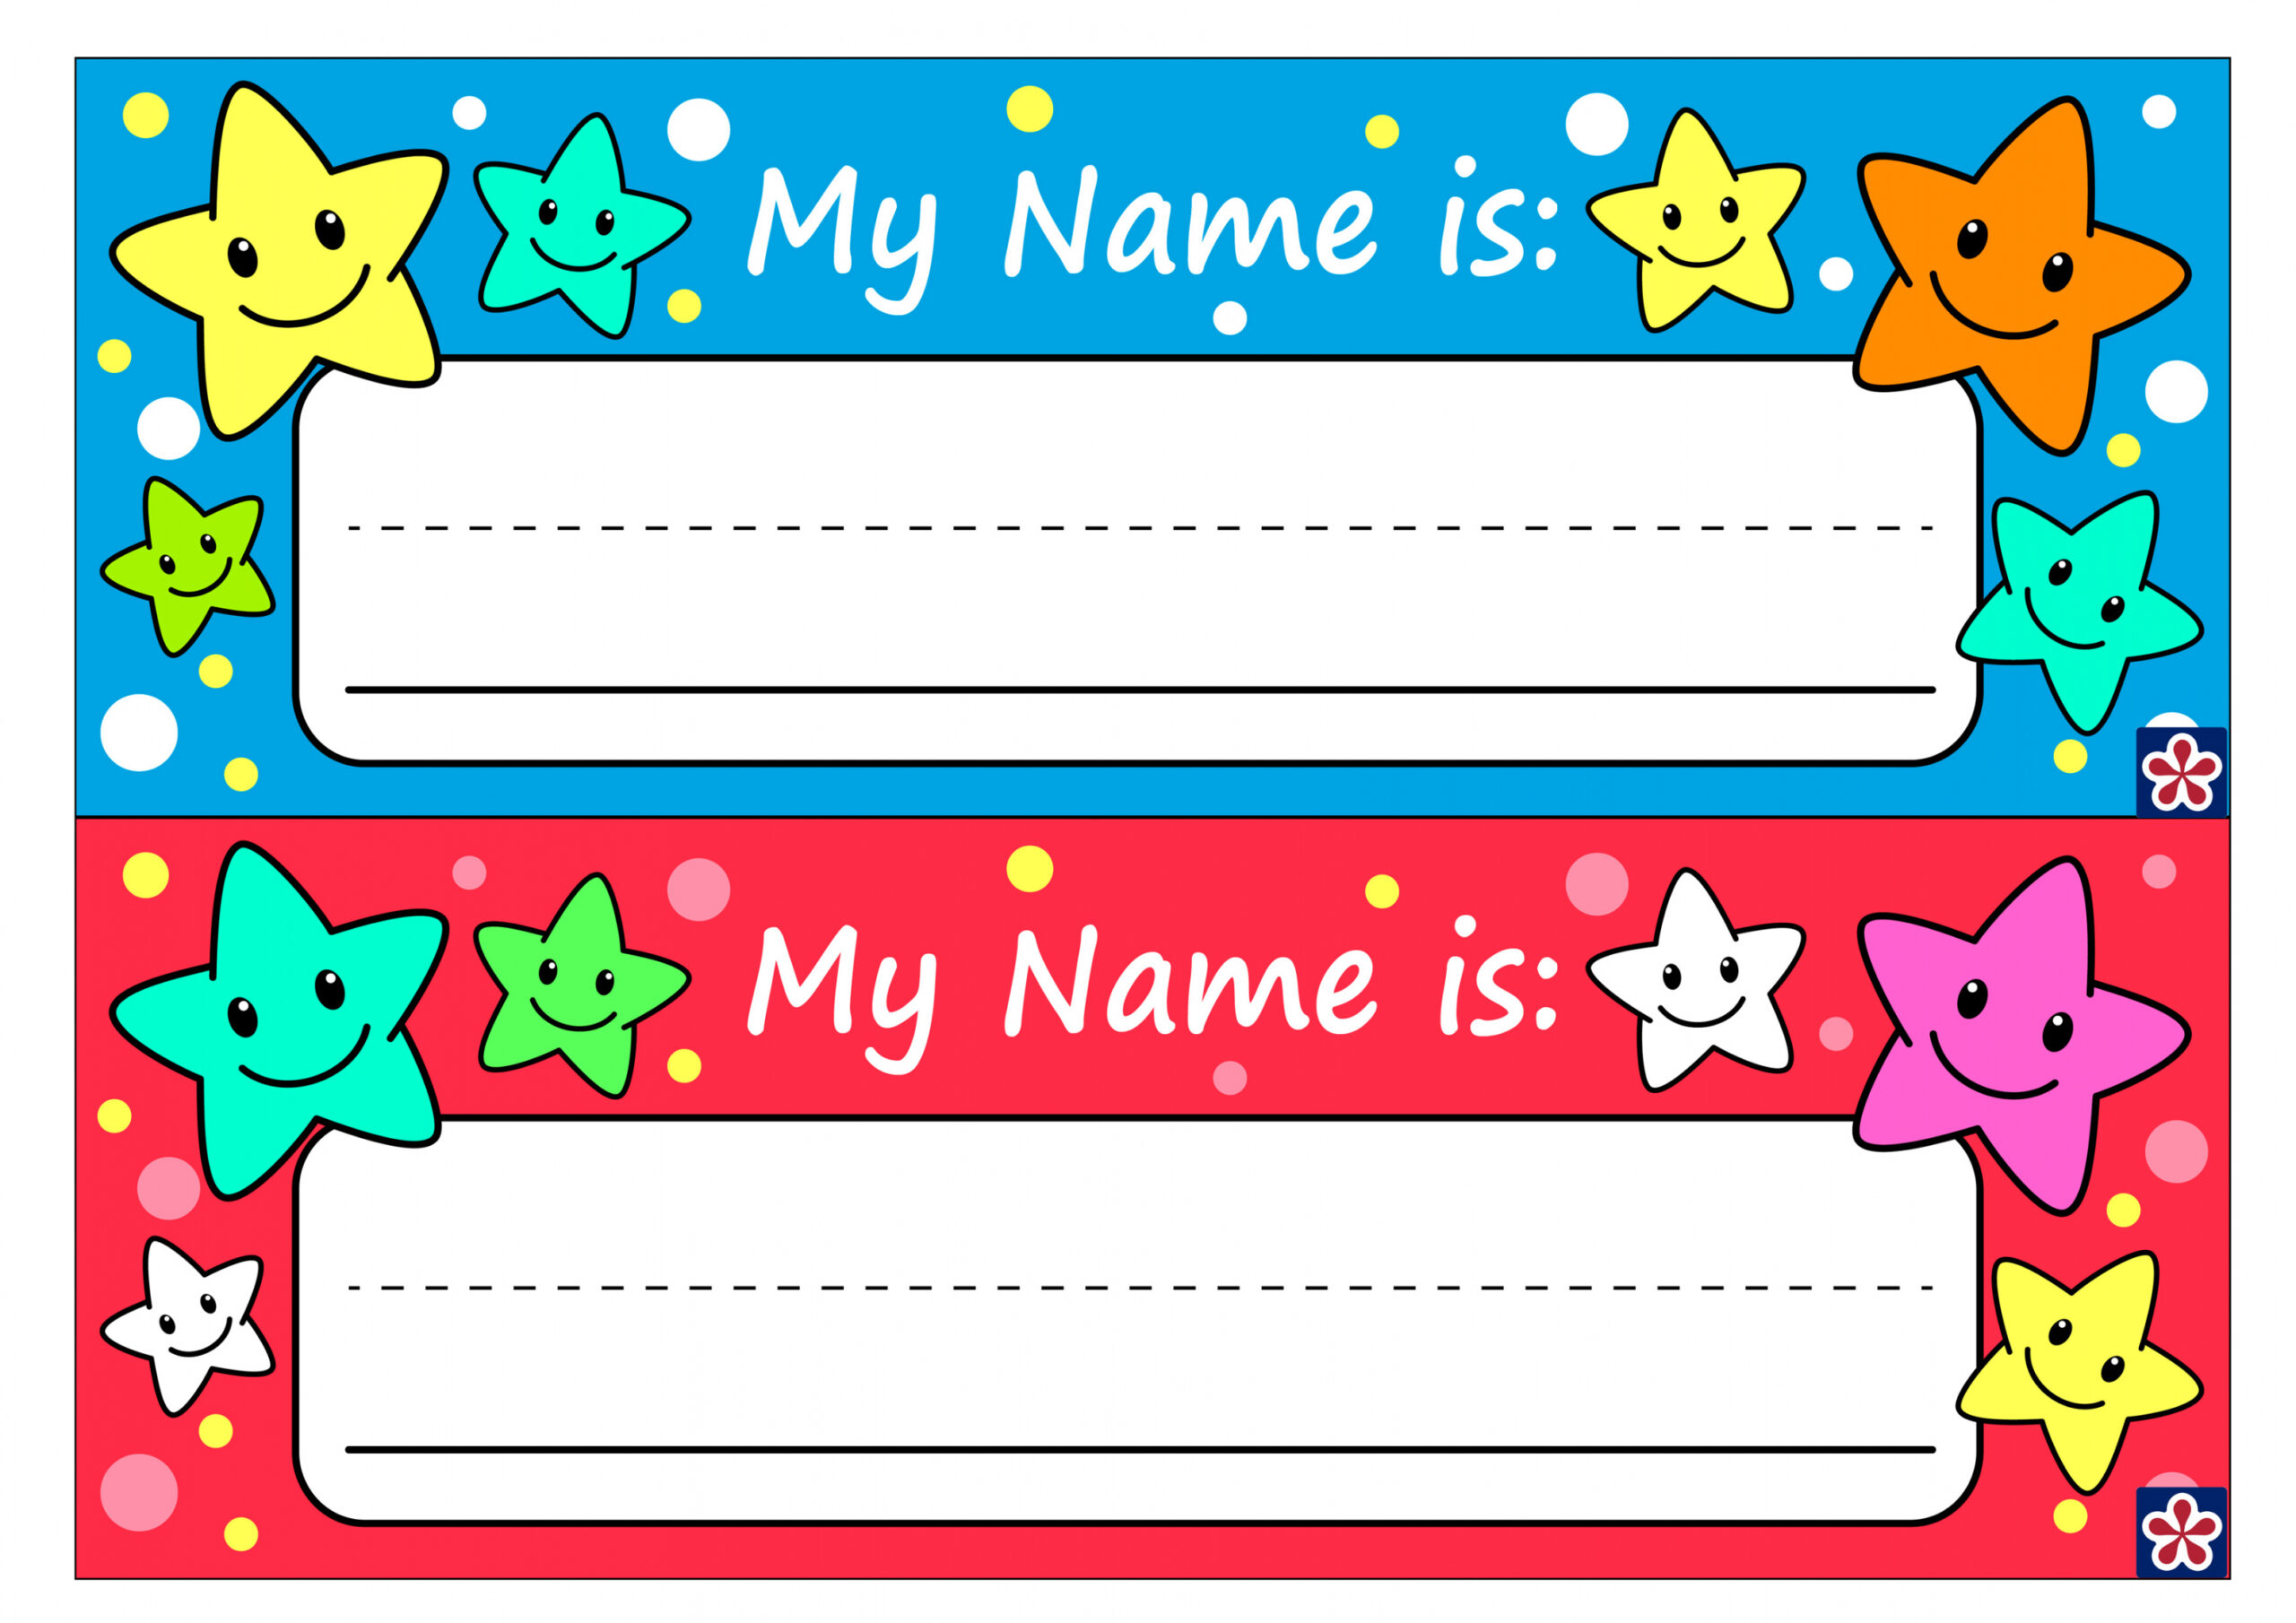 Free Printable Name Tags - Printable - Free Printable Name Tags for Preschoolers. TeachersMag